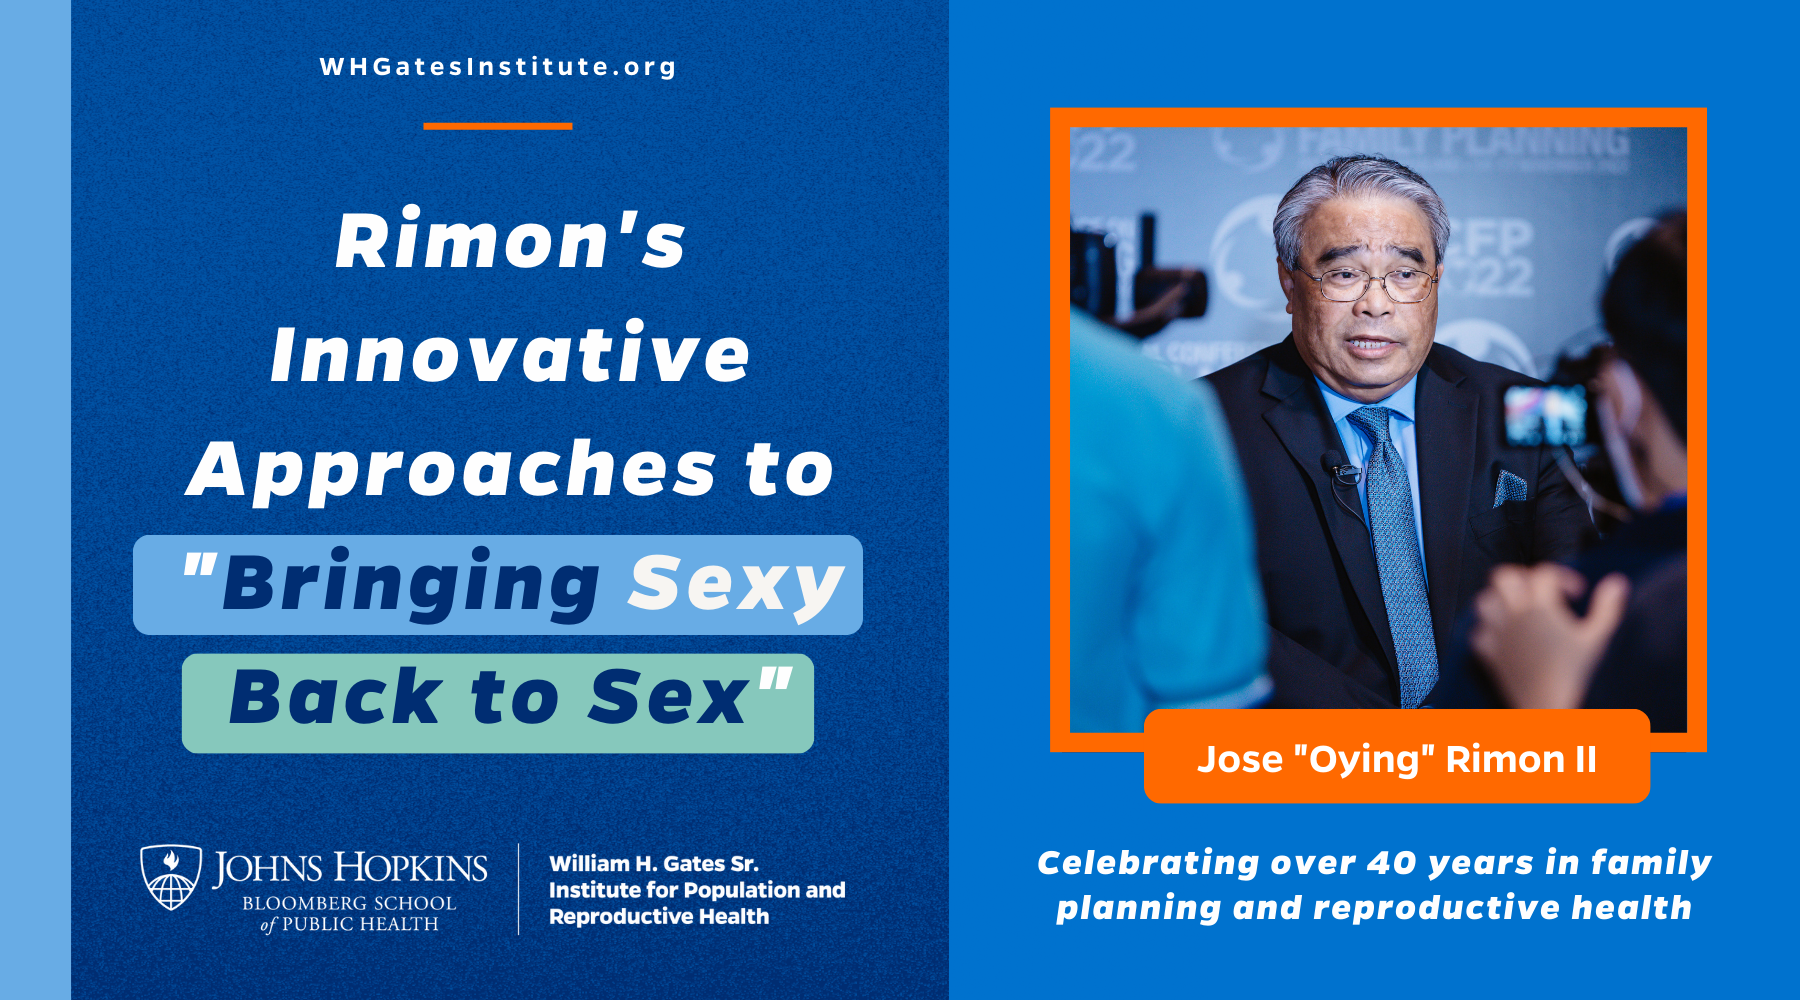 Le directeur de l'Institut Gates, Jose "Oying" Rimon, prend sa retraite après une brillante carrière de défenseur de causes sanitaires mondiales telles que la planification familiale et la santé génésique.